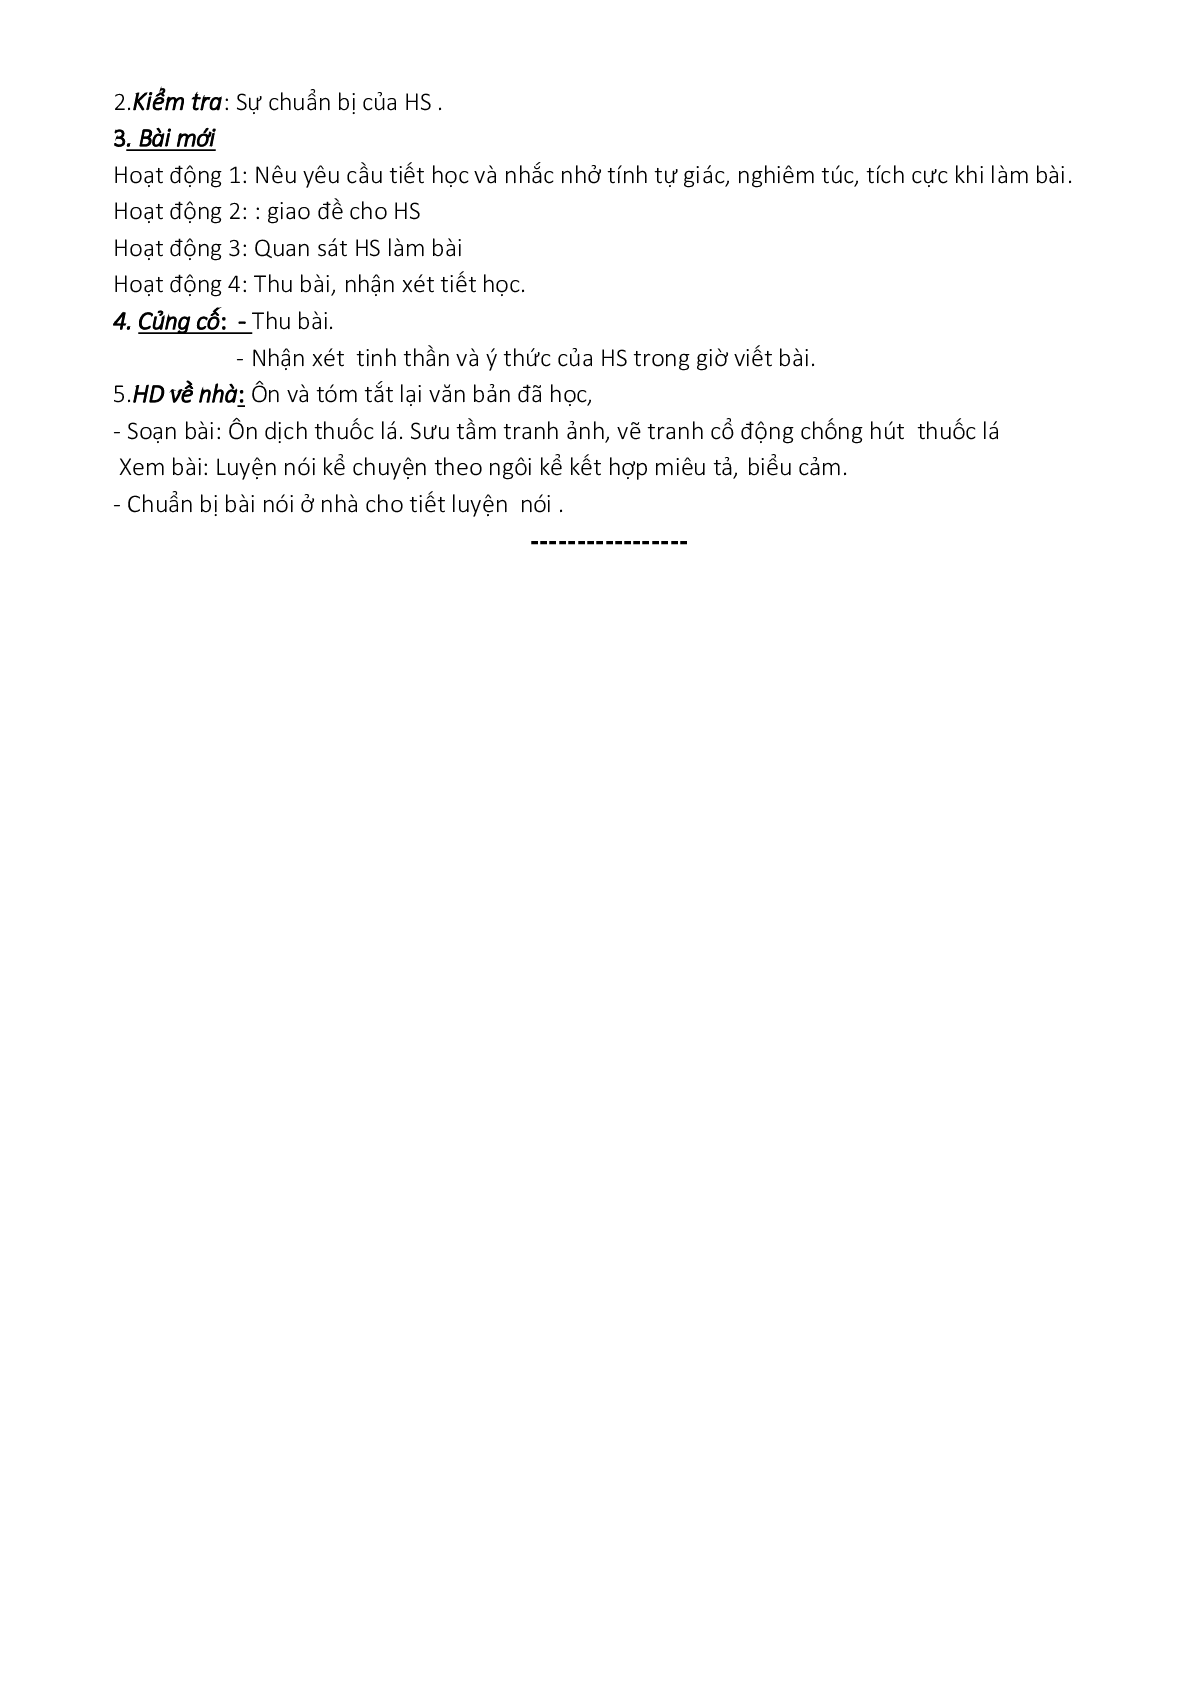 Giáo án ngữ văn lớp 8 Tuần 11 Tiết 41: Kể chuyện theo ngôi kể kết hợp với miêu tả biểu cảm mới nhất (trang 5)